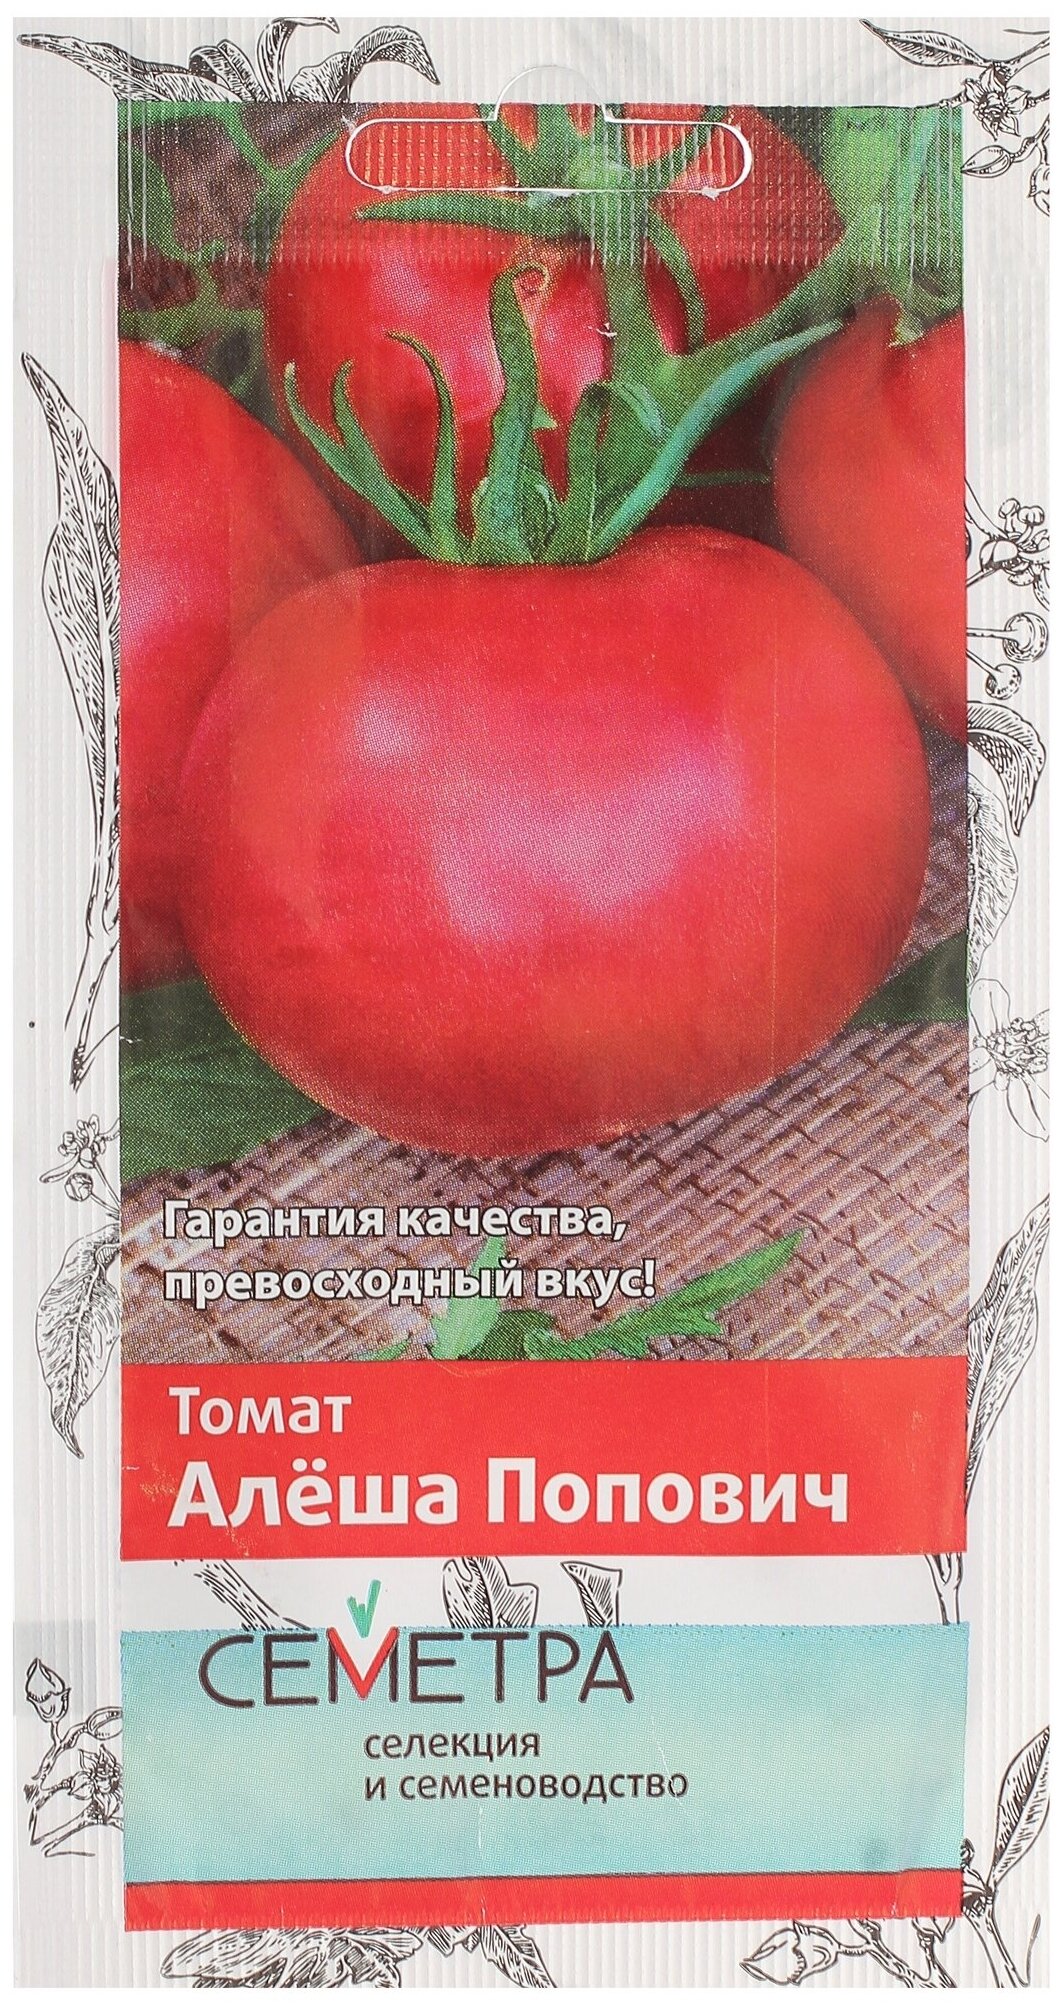 Томат "алеша попович": характеристика и описание сорта, урожайность, фото, отзывы кто сажал